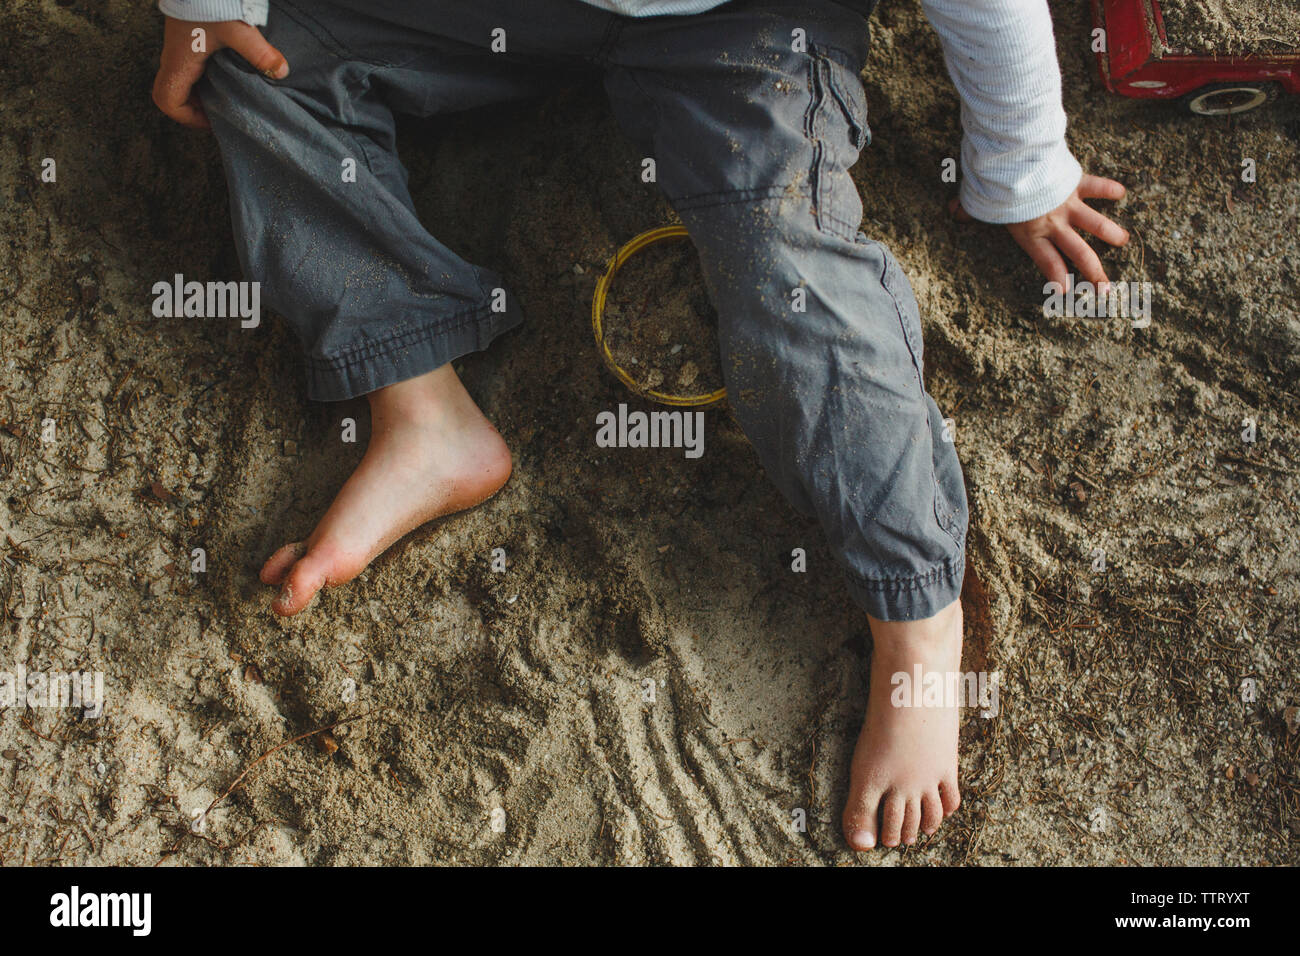 La metà inferiore di un piccolo ragazzo giocando a piedi nudi in una sandbox Foto Stock